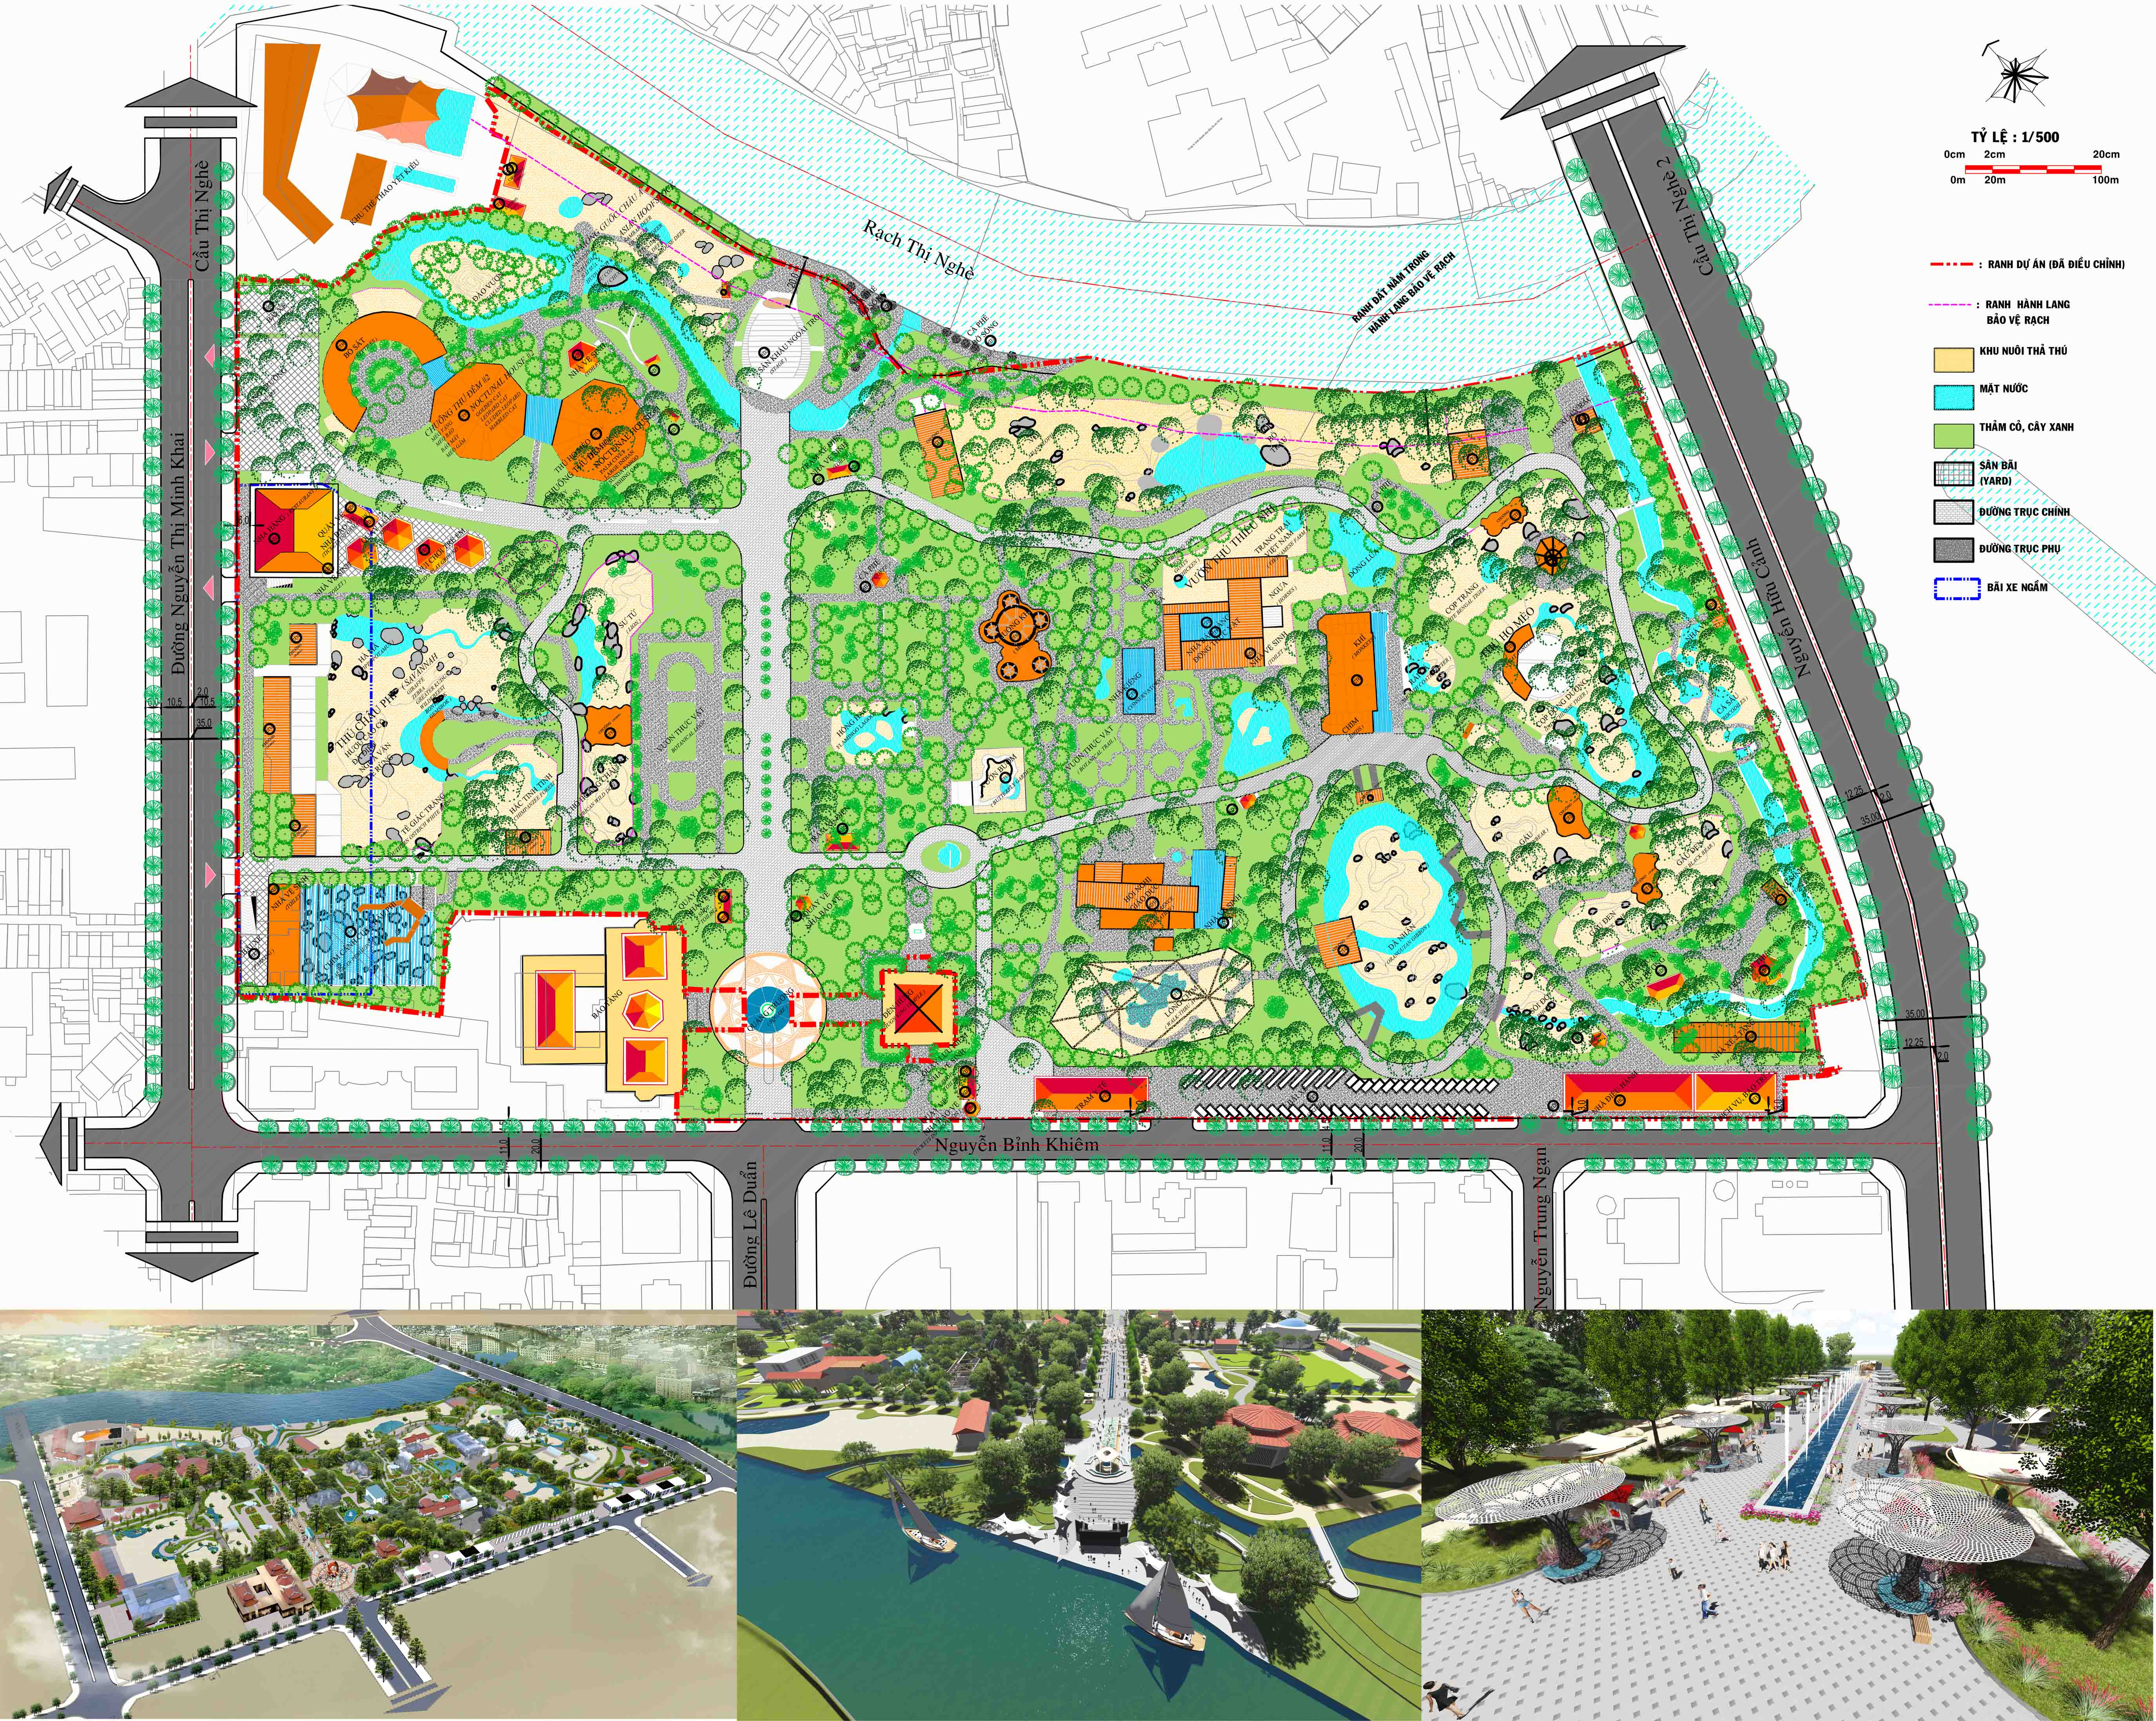 Đồ án điều chỉnh quy hoạch đang được áp dụng tại TP. HCM để tạo ra một hệ thống công viên đô thị mới. Công viên của thành phố đã được cải tạo lại, với nhiều khu vực khác nhau. Hãy đến các khu vực khác nhau của đô thị để trải nghiệm các khu vực xanh tươi mới.